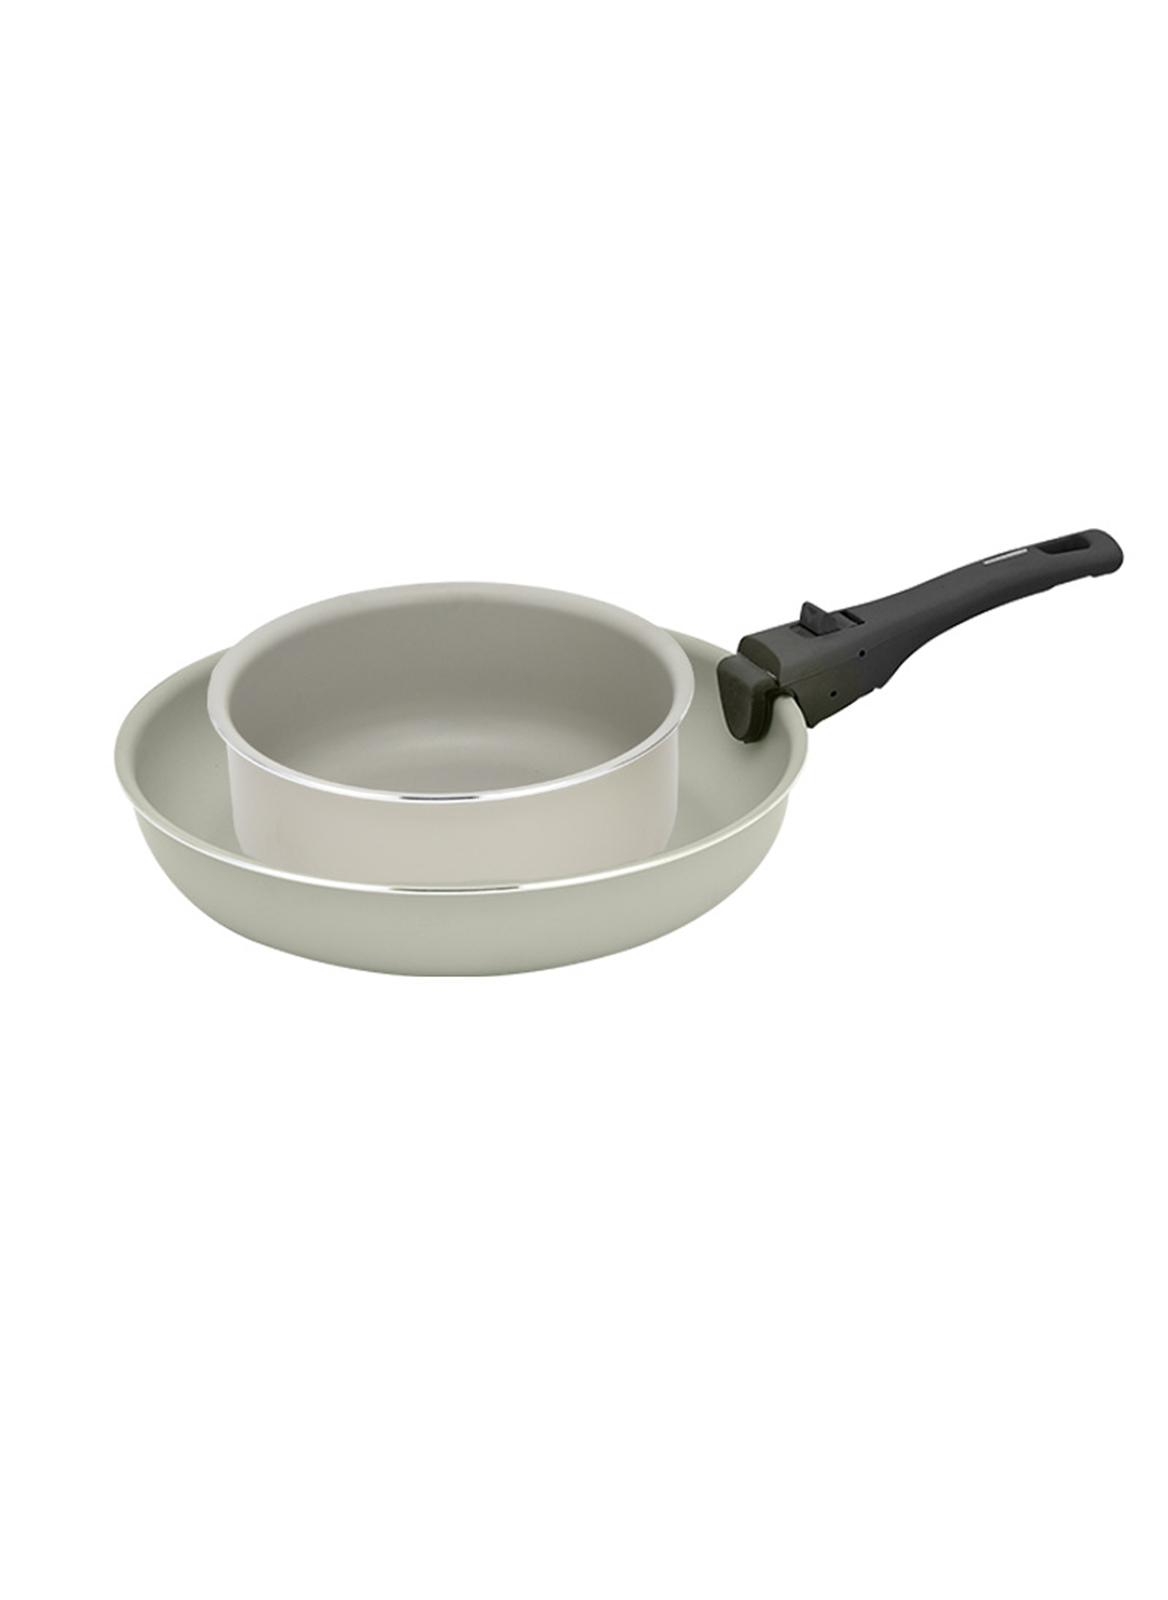 2-Piece Household Aluminum Removable Non-Stick Frying Pan Milk Pan Set (16cm+20cm)